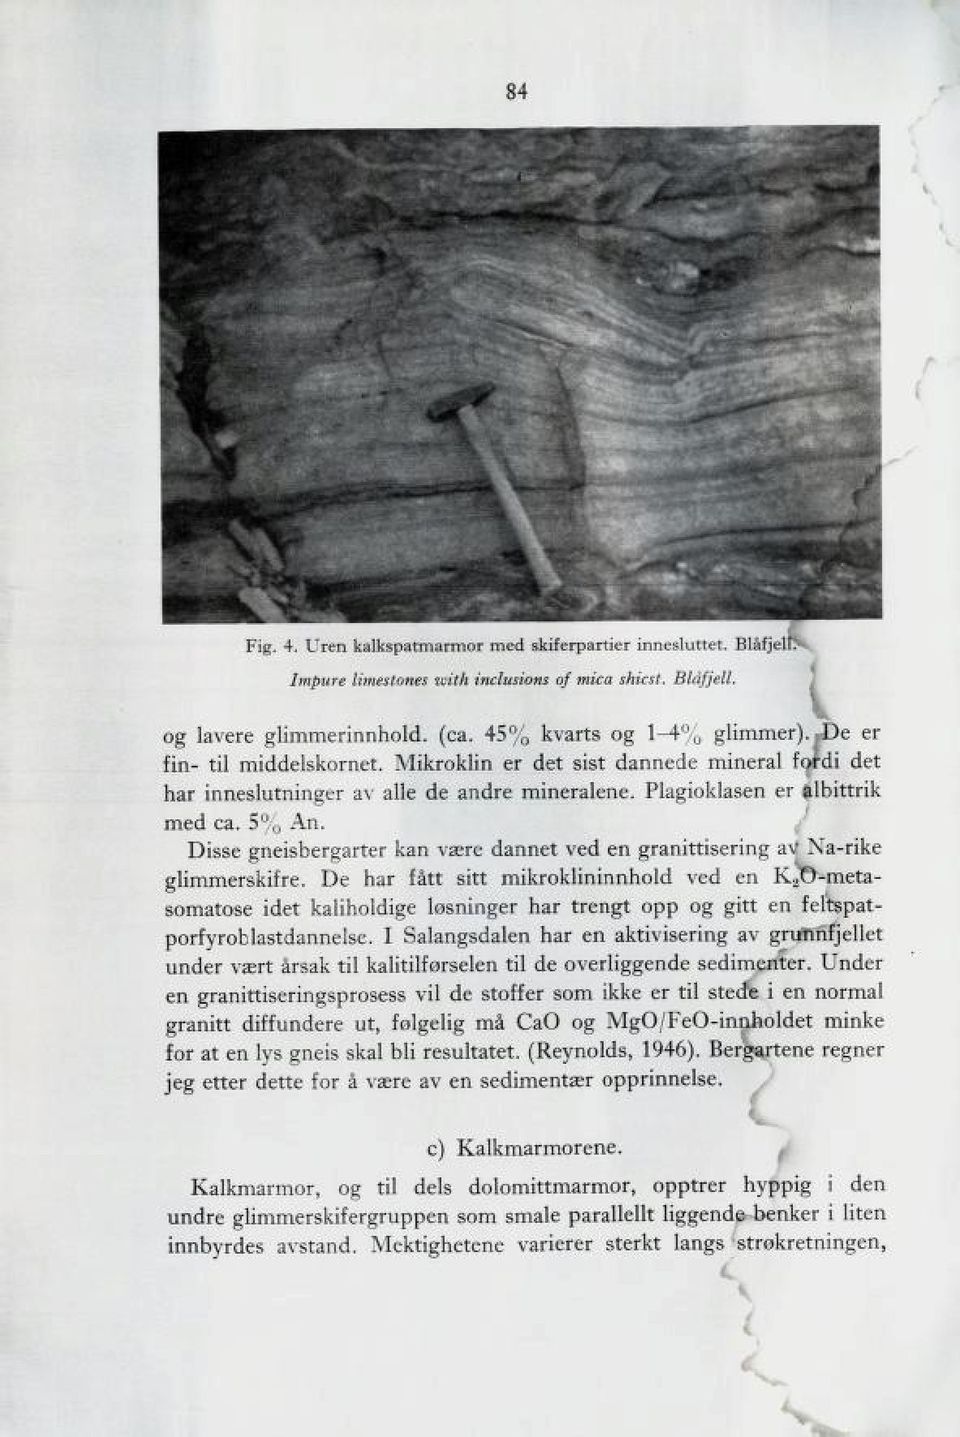 / Disse gneisbergarter kan være dannet ved en AranittiserinF av Na-rike glimmerskifre.